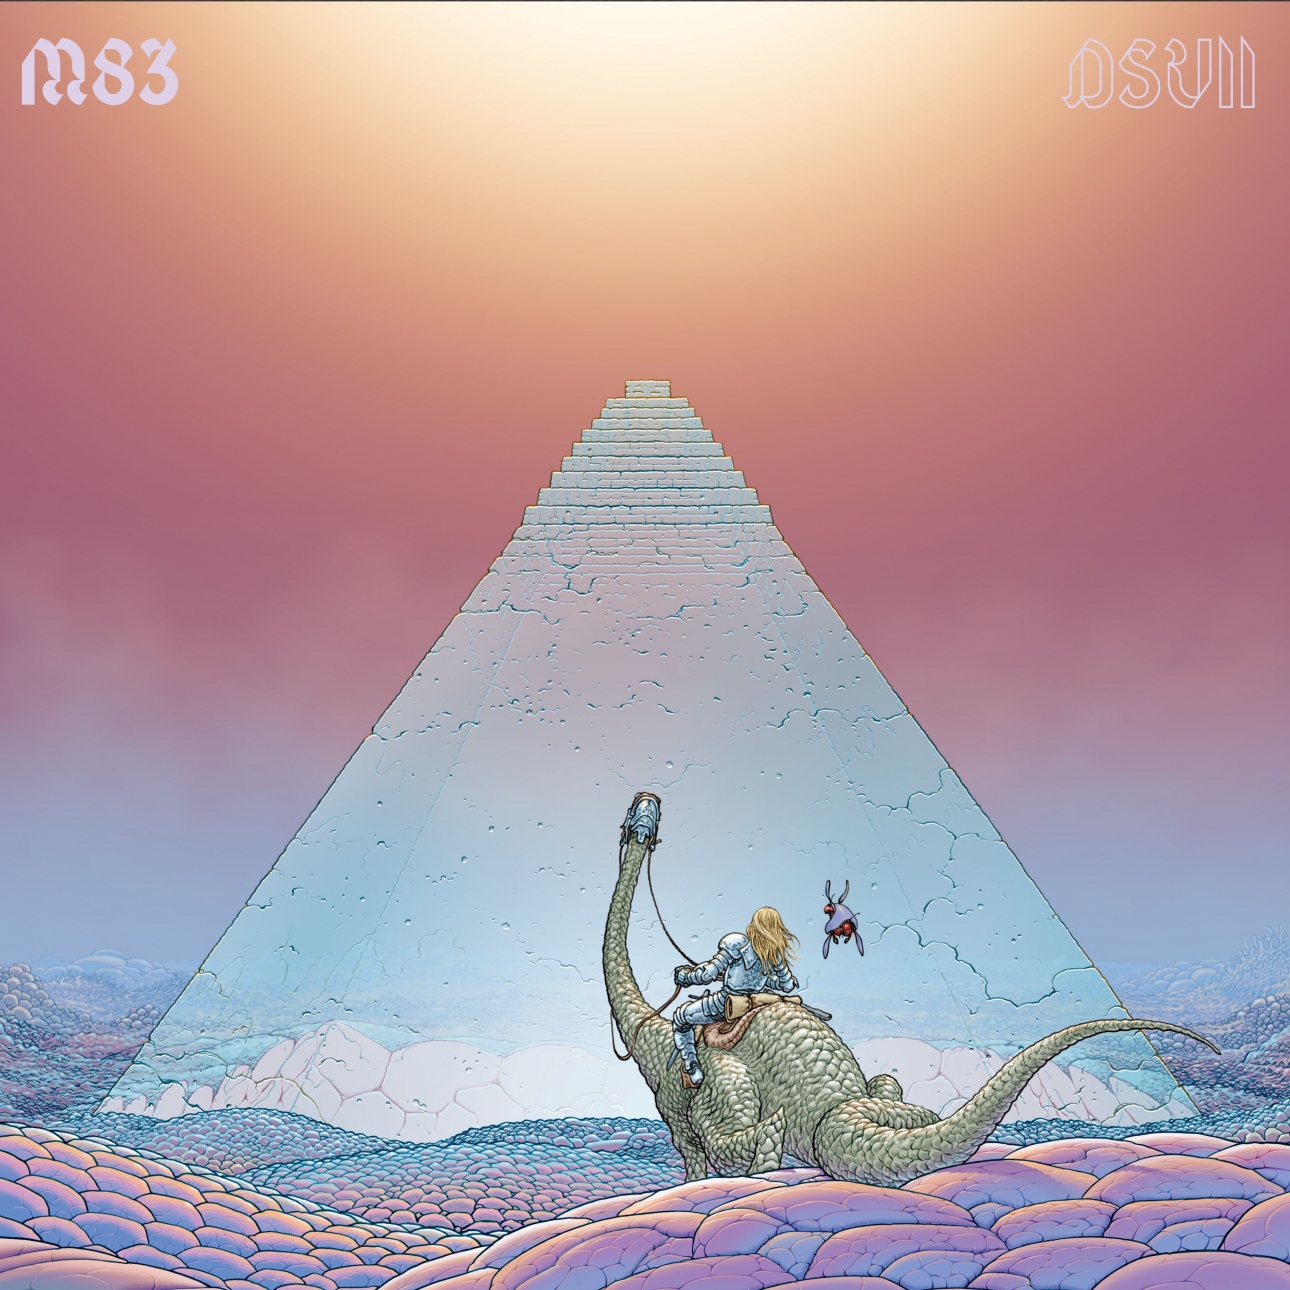 M83 - DSVII | Album Review